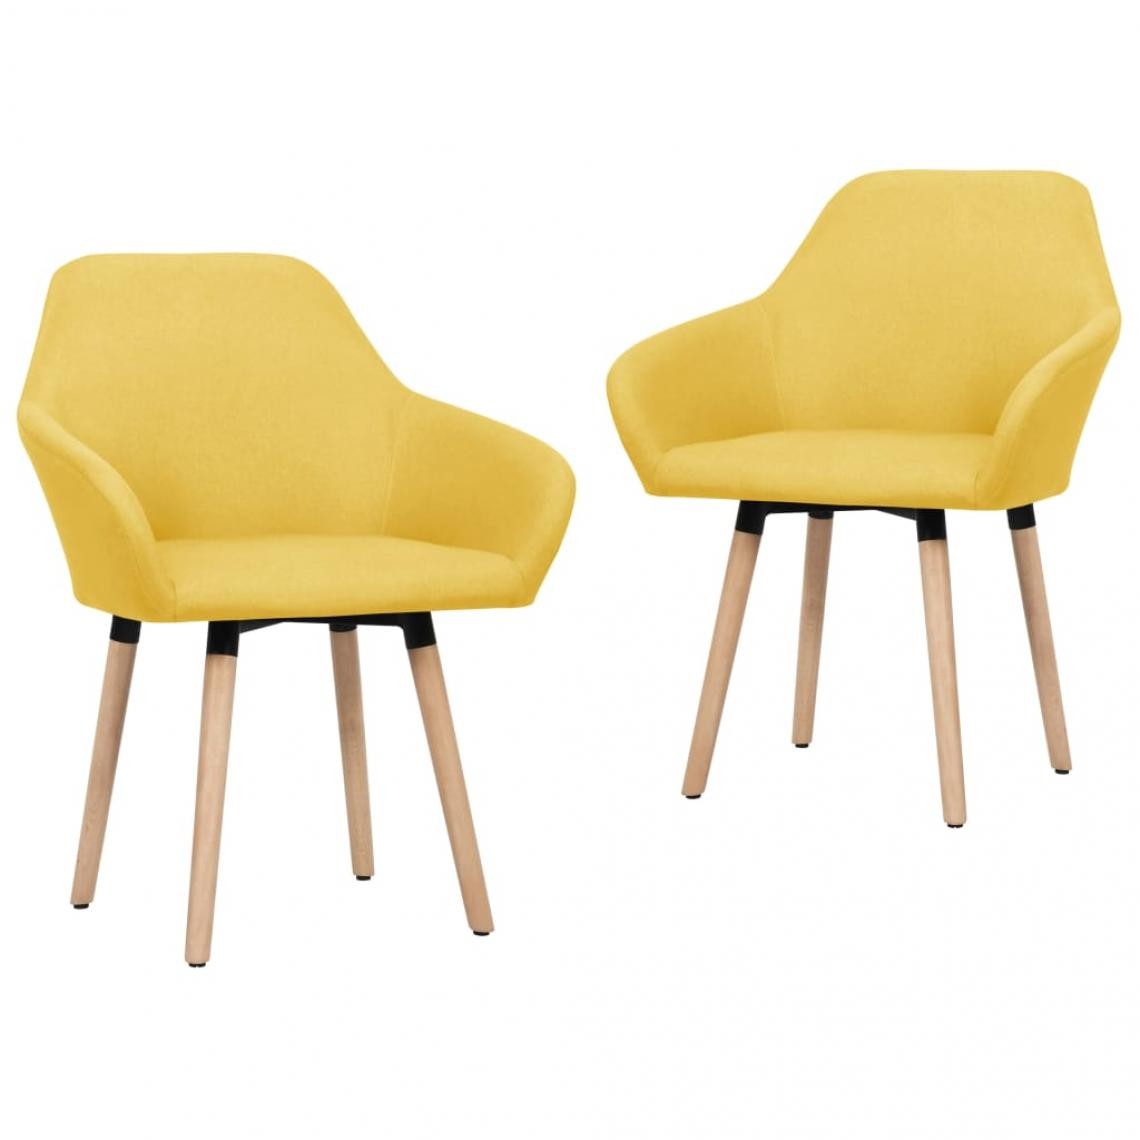 Decoshop26 - Lot de 2 chaises de salle à manger cuisine design moderne tissu jaune CDS020648 - Chaises